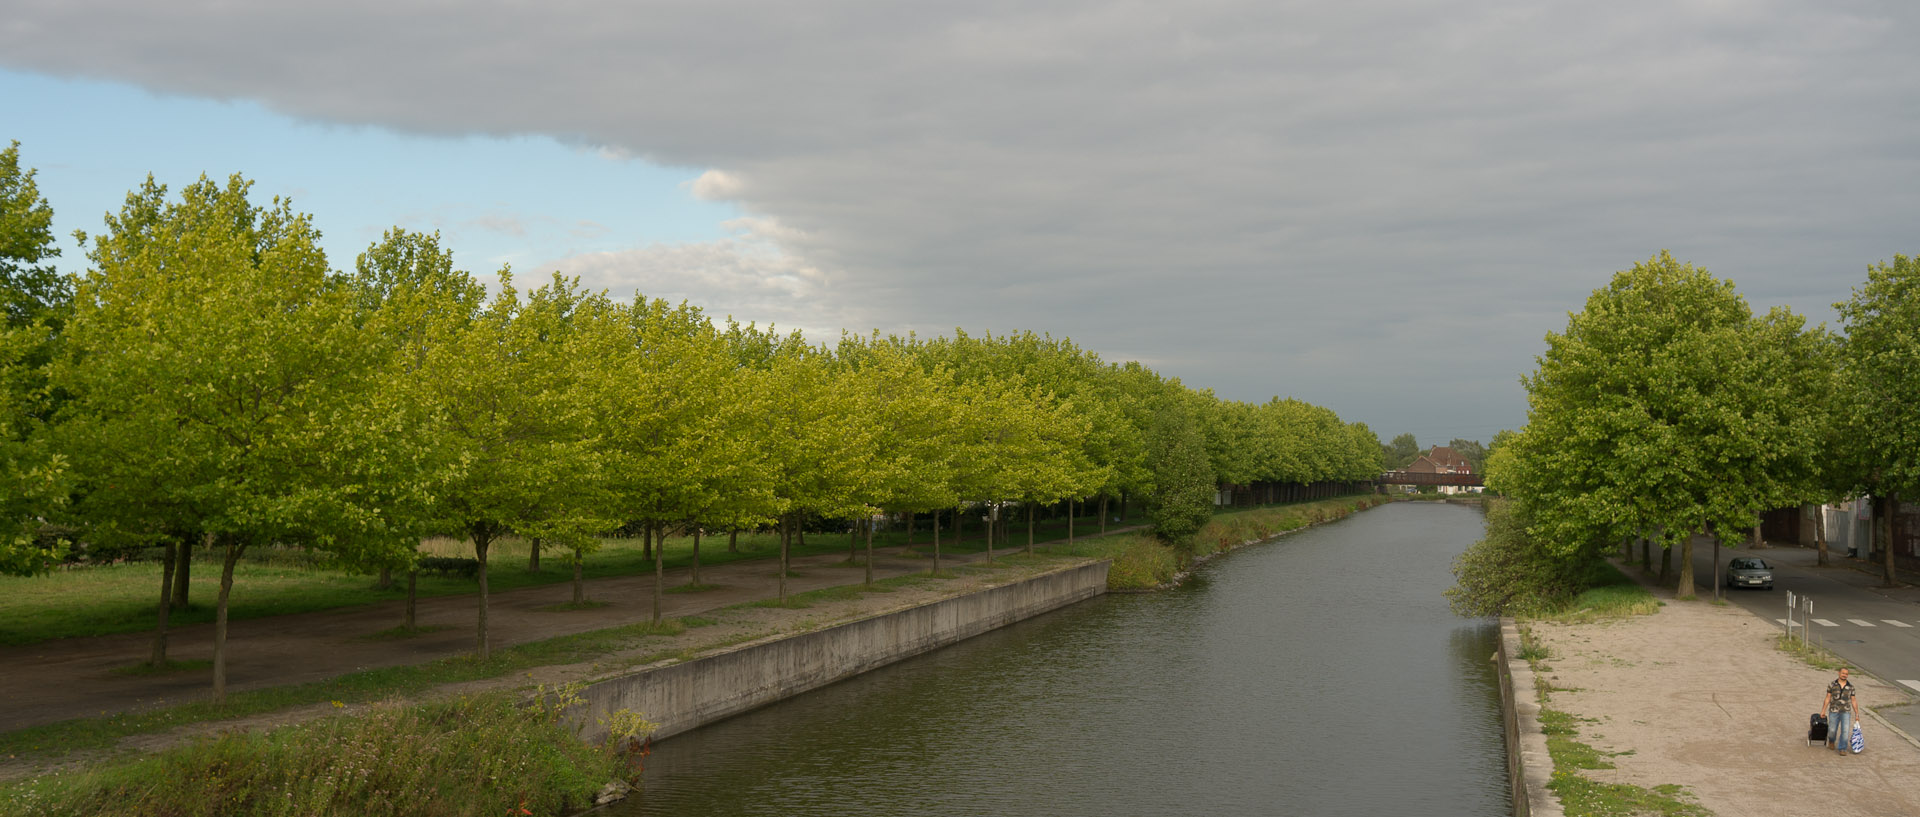 Le canal de Roubaix.